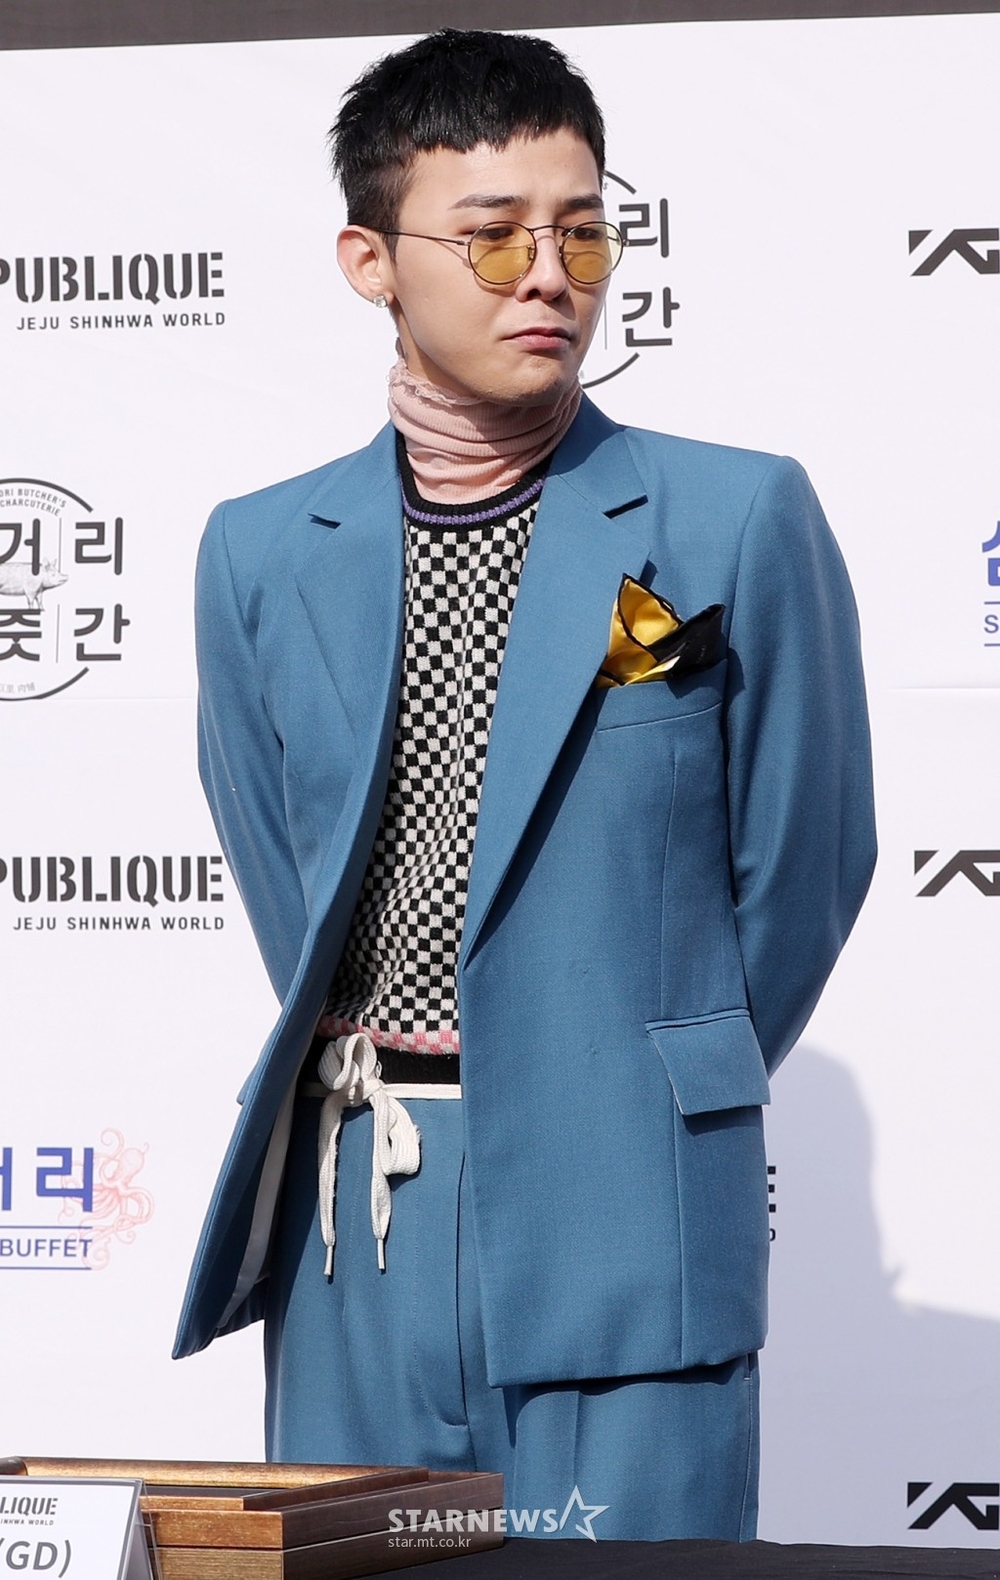 
Luôn biết cách làm mới vẻ bề ngoài, G-Dragon diện vest xanh phá cách vô cùng sành điệu.